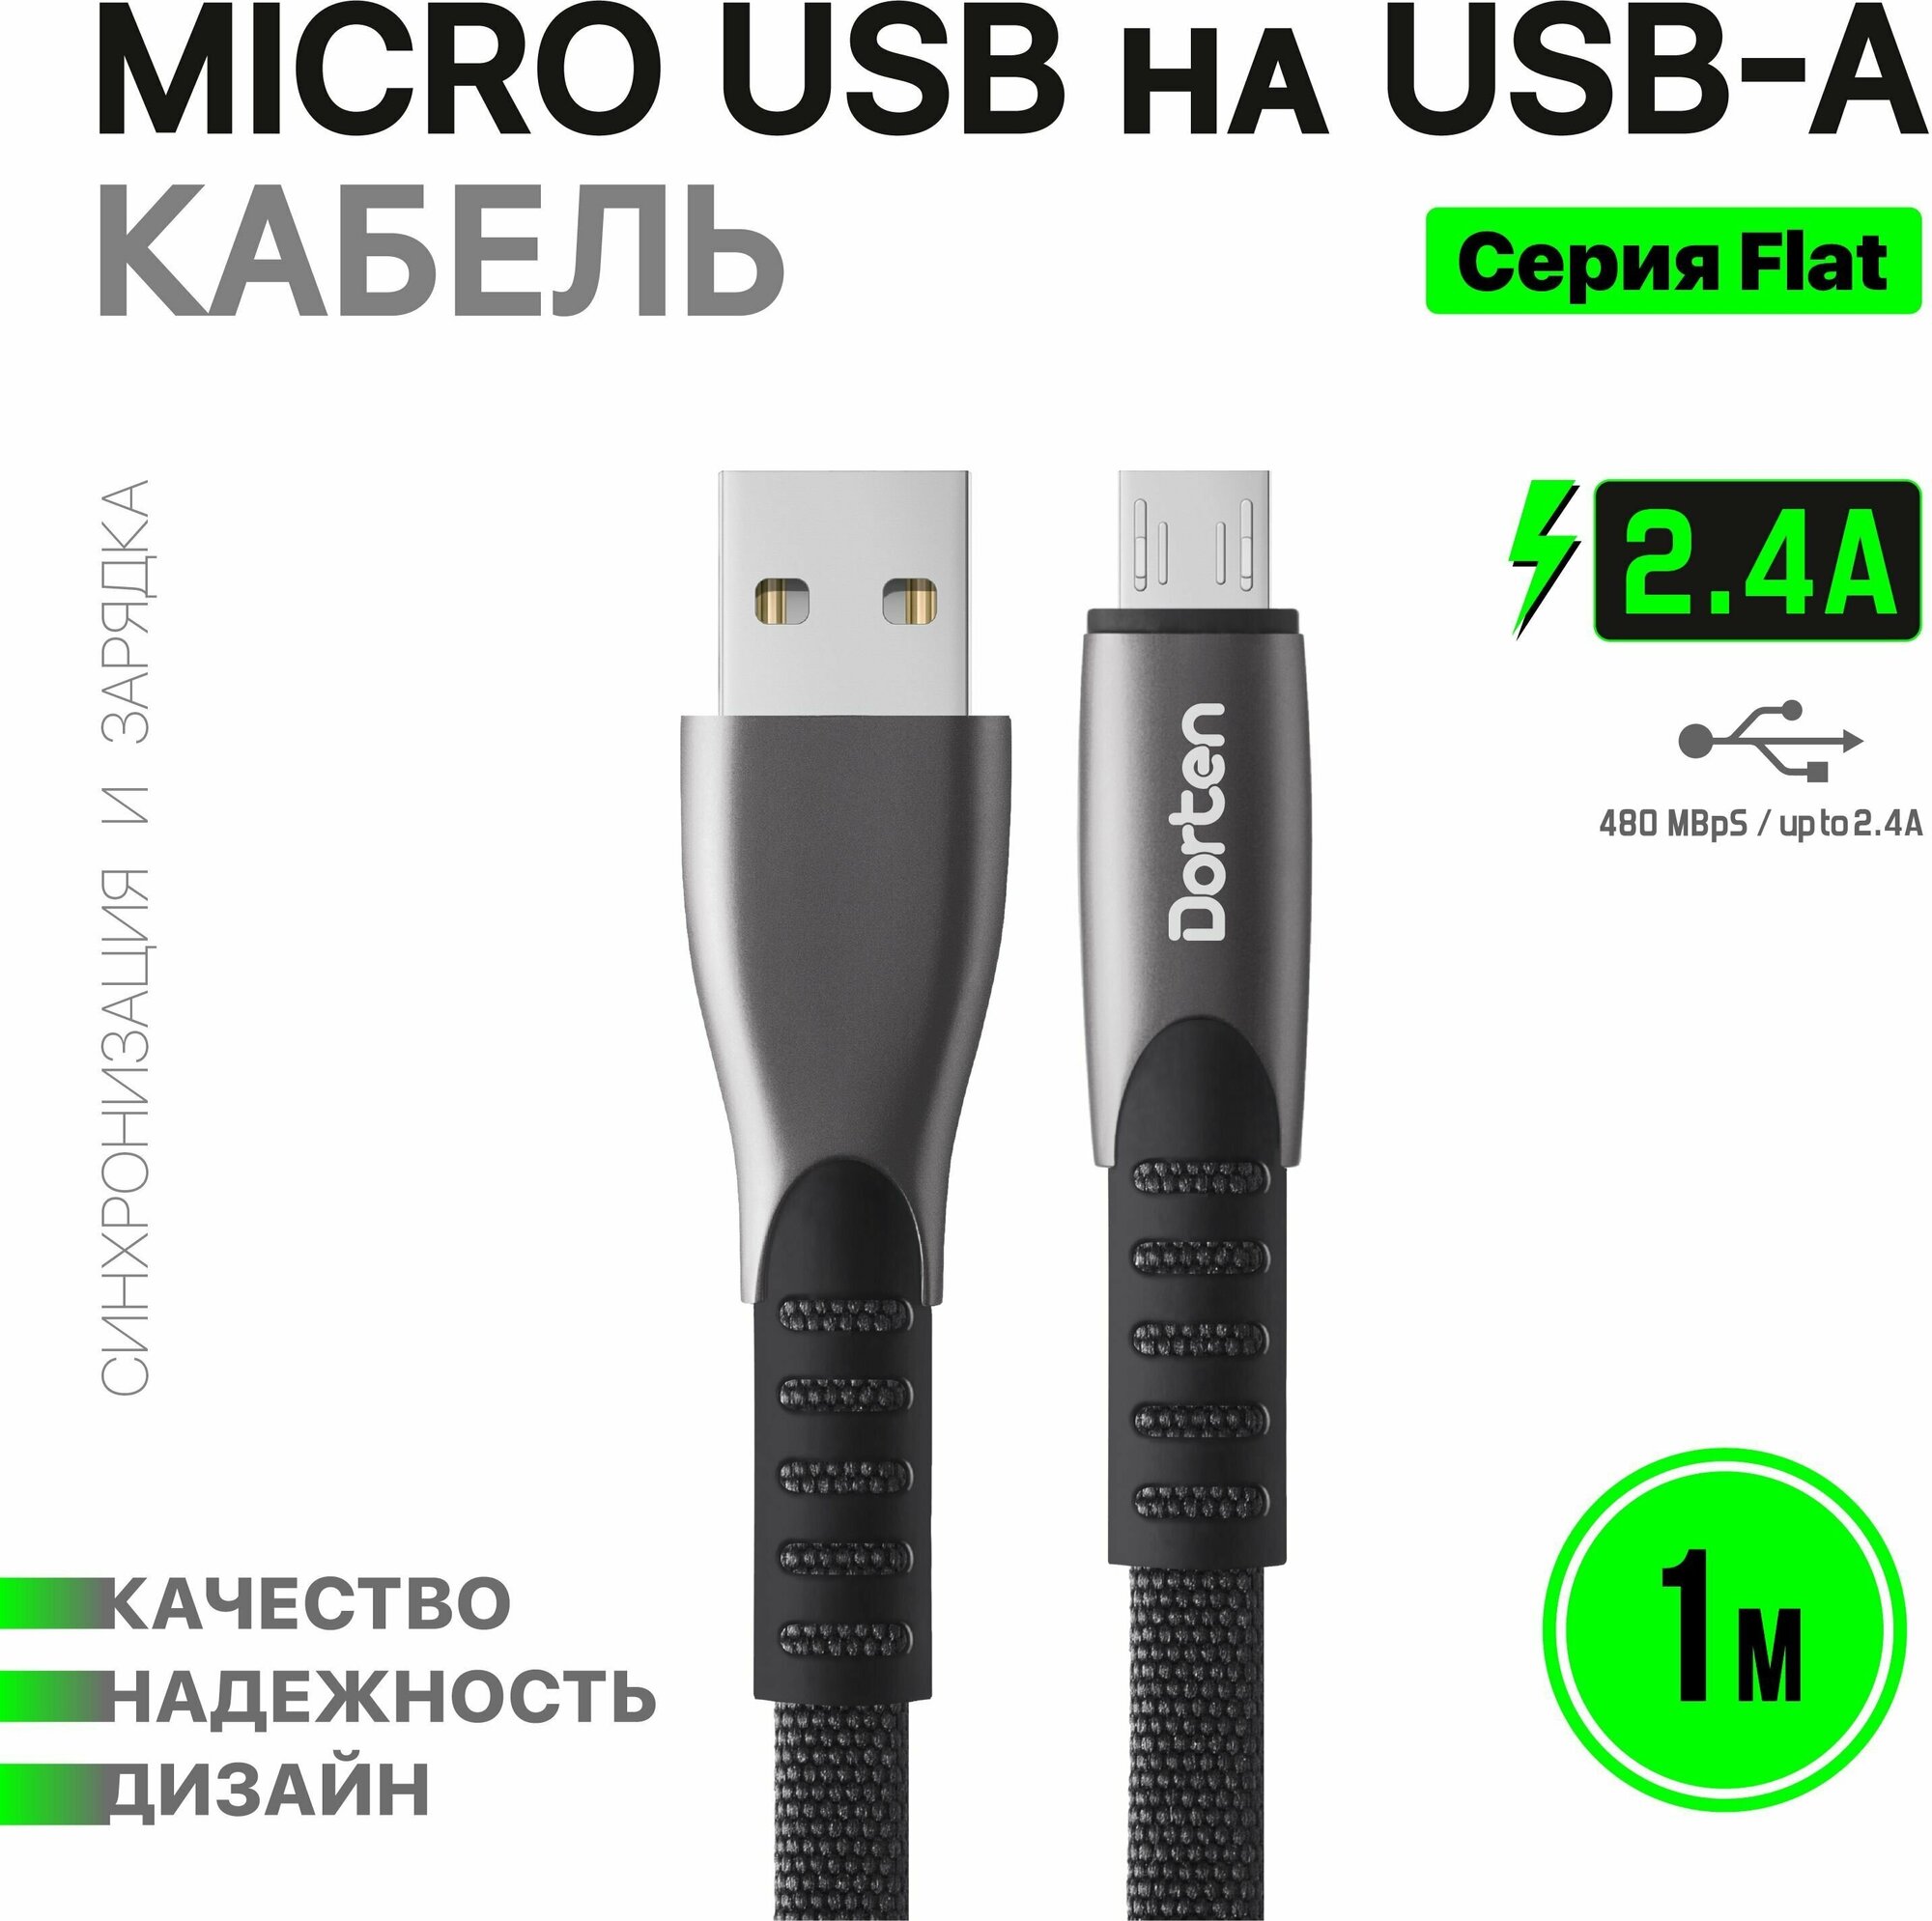 Кабель Dorten Micro USB для зарядки телефона 1 метр: Flat series провод юсб 1м - Черный